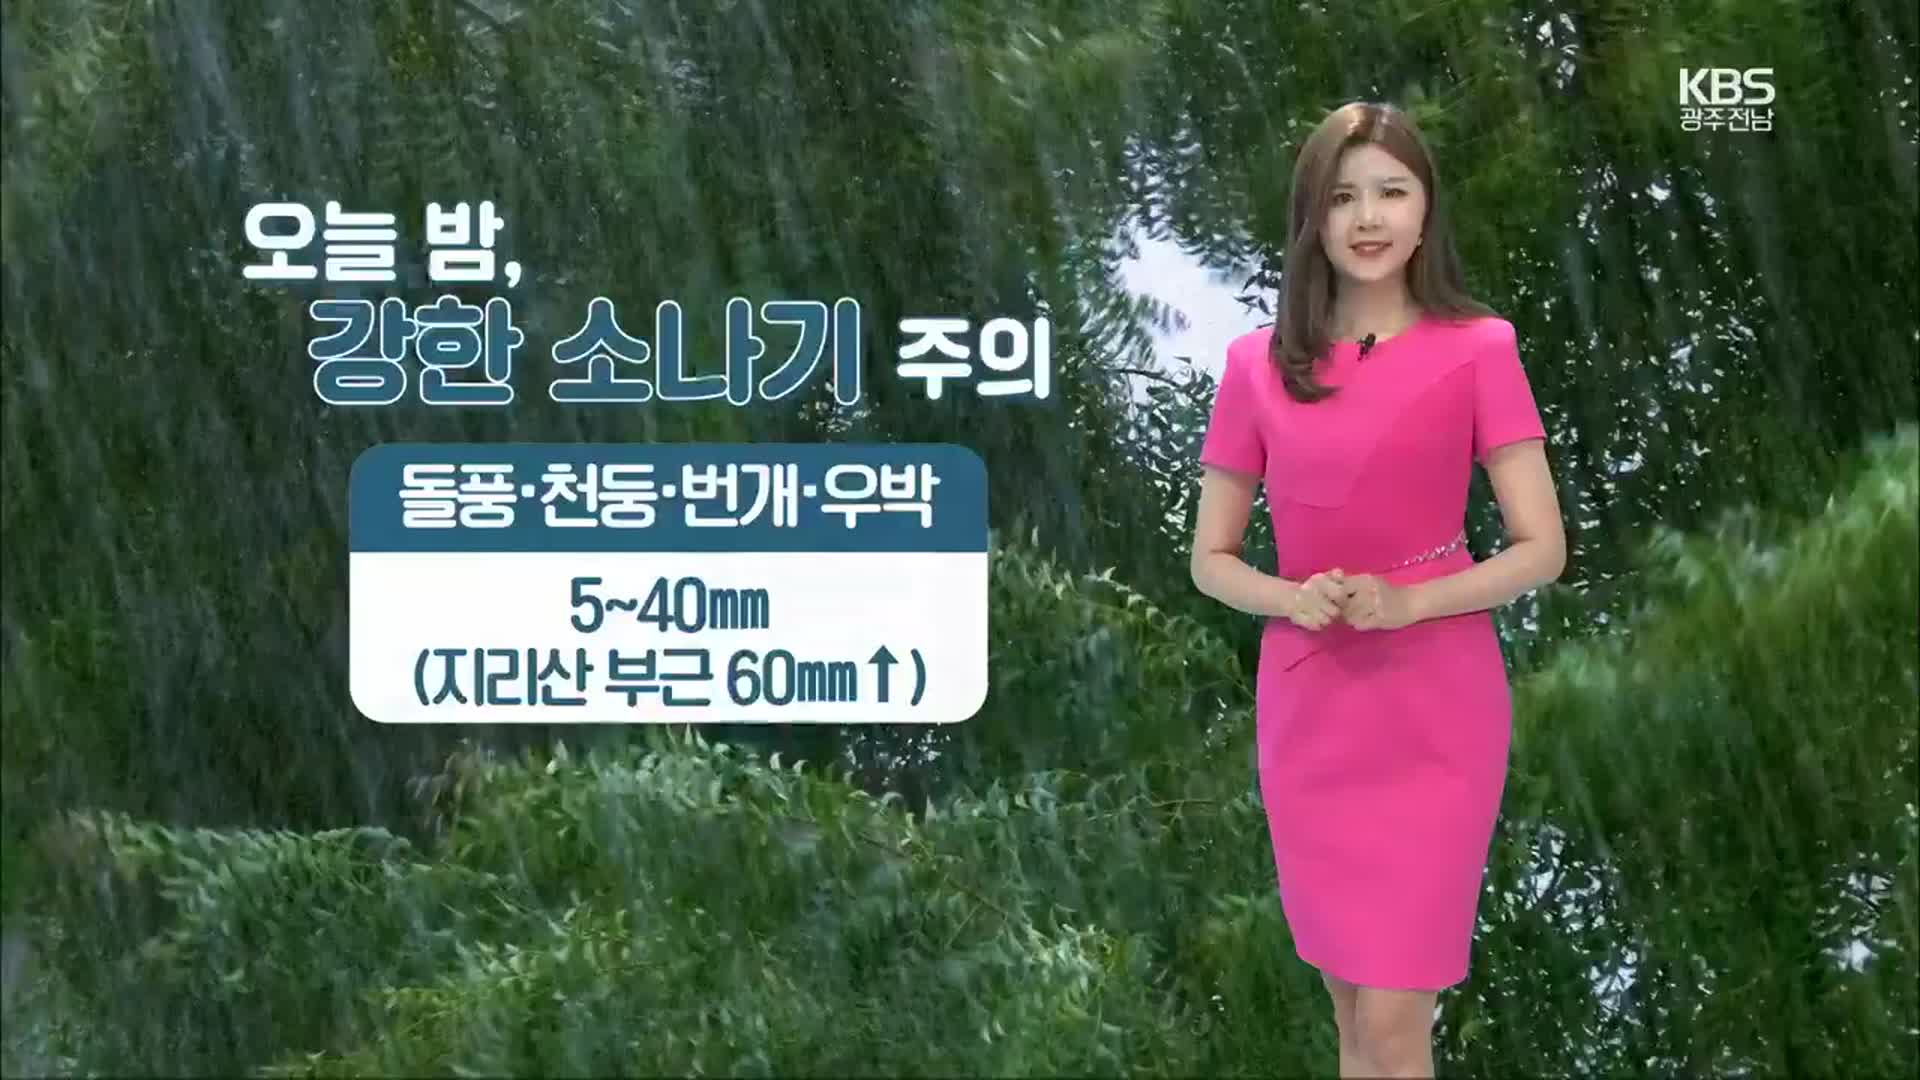 [날씨] 광주·전남 오늘 밤 강한 소나기 주의…최대 60mm↑